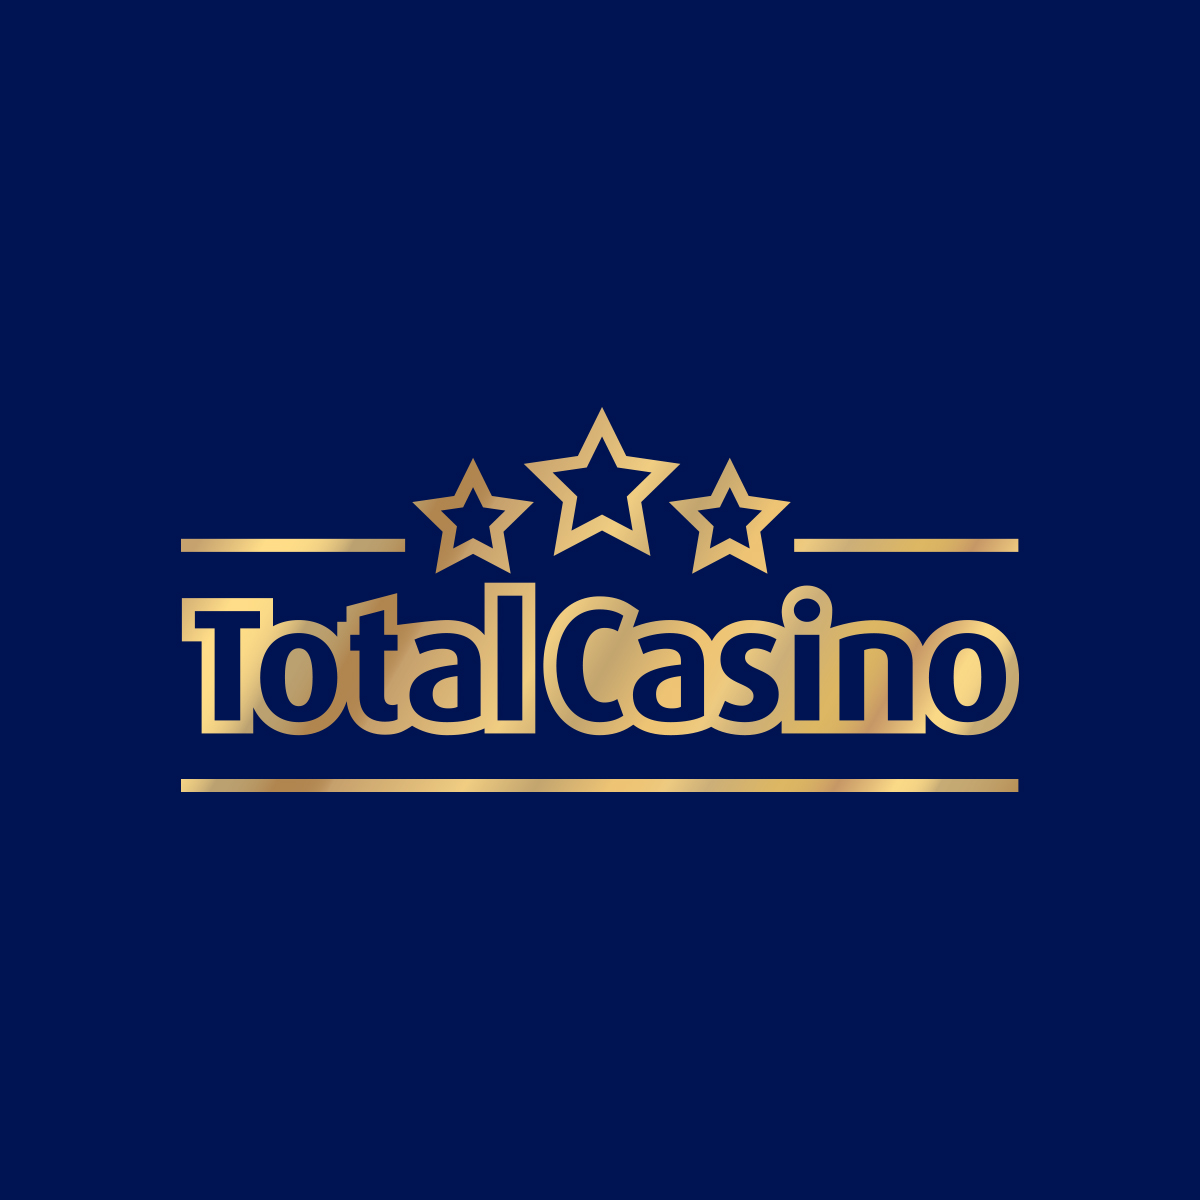 Jak stracić pieniądze z legalne casino online